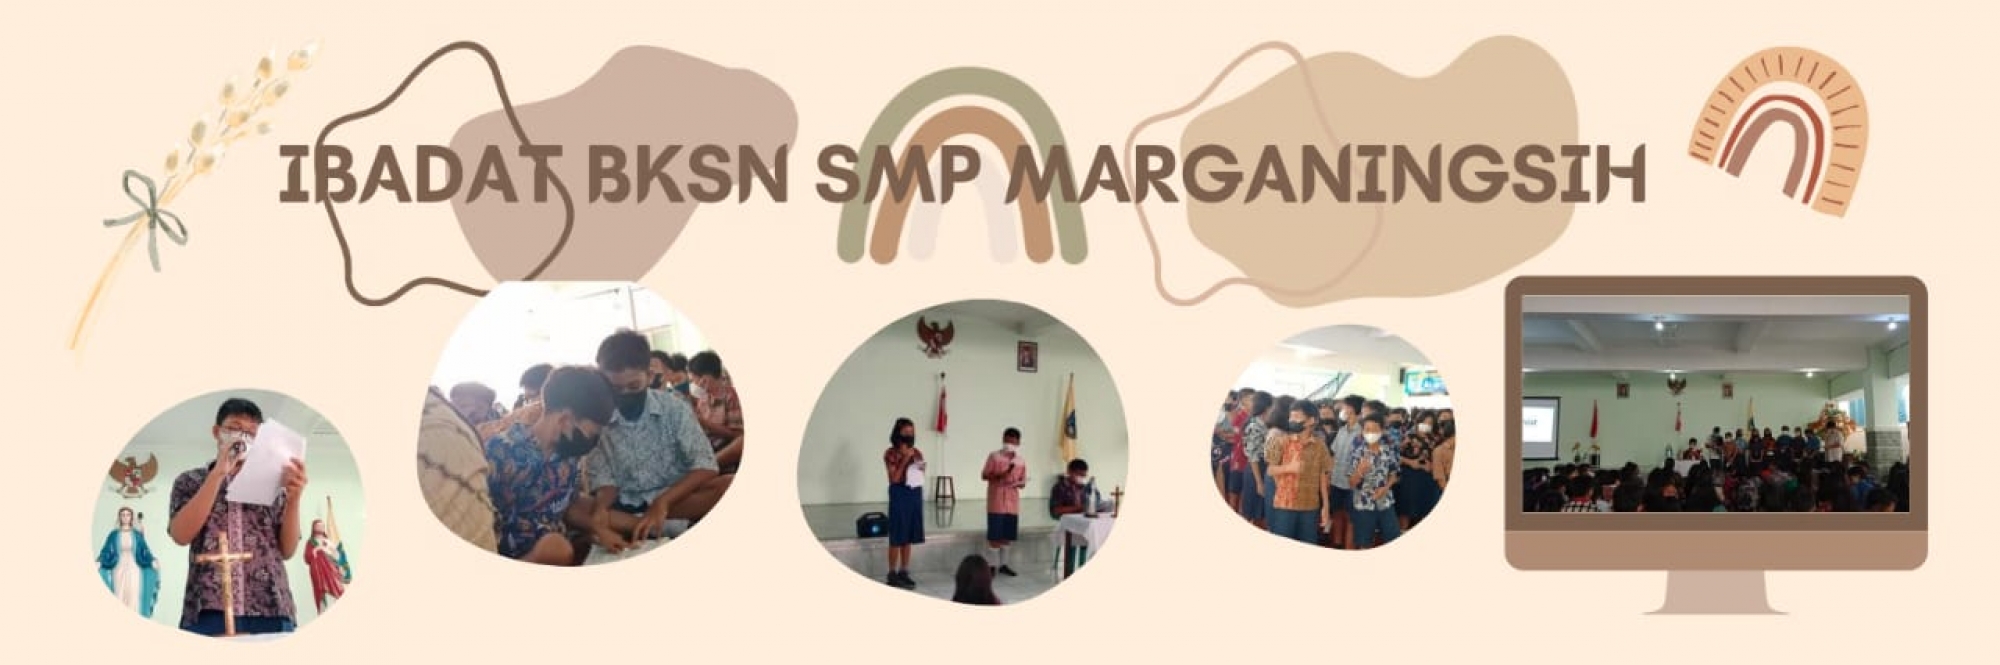 SMP Marganingsih